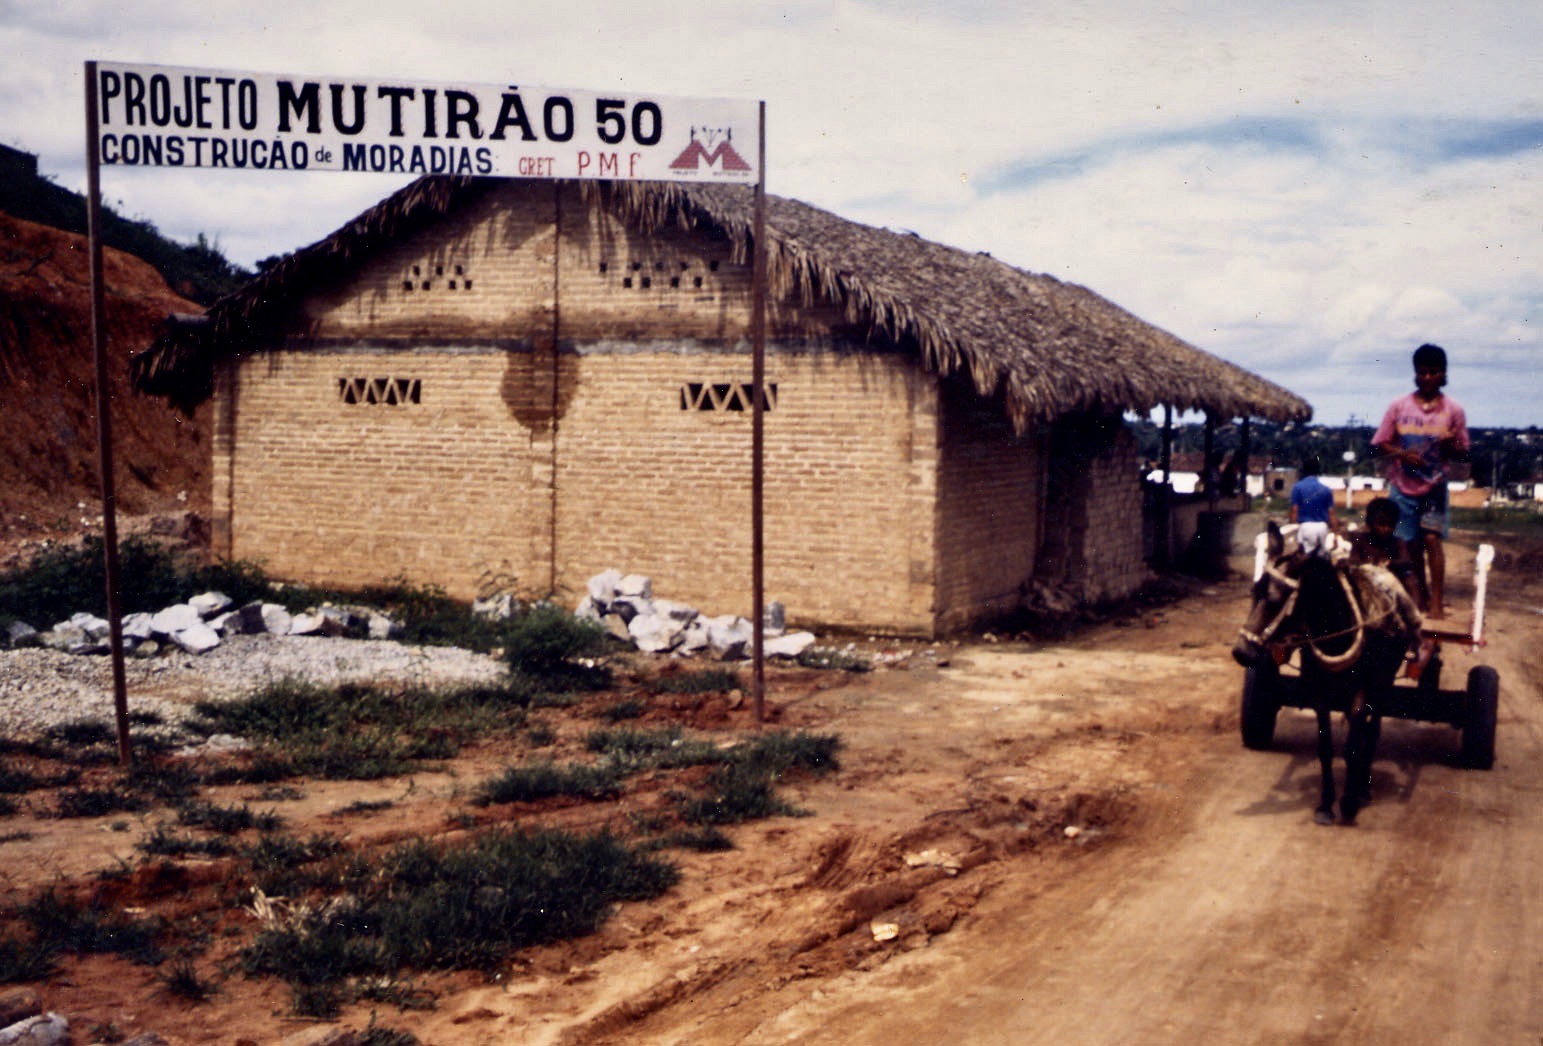 Entrada do Projeto Mutirão 50, em Fortaleza, capital do Ceará, nos anos 1990. Arquivo Yves Cabannes